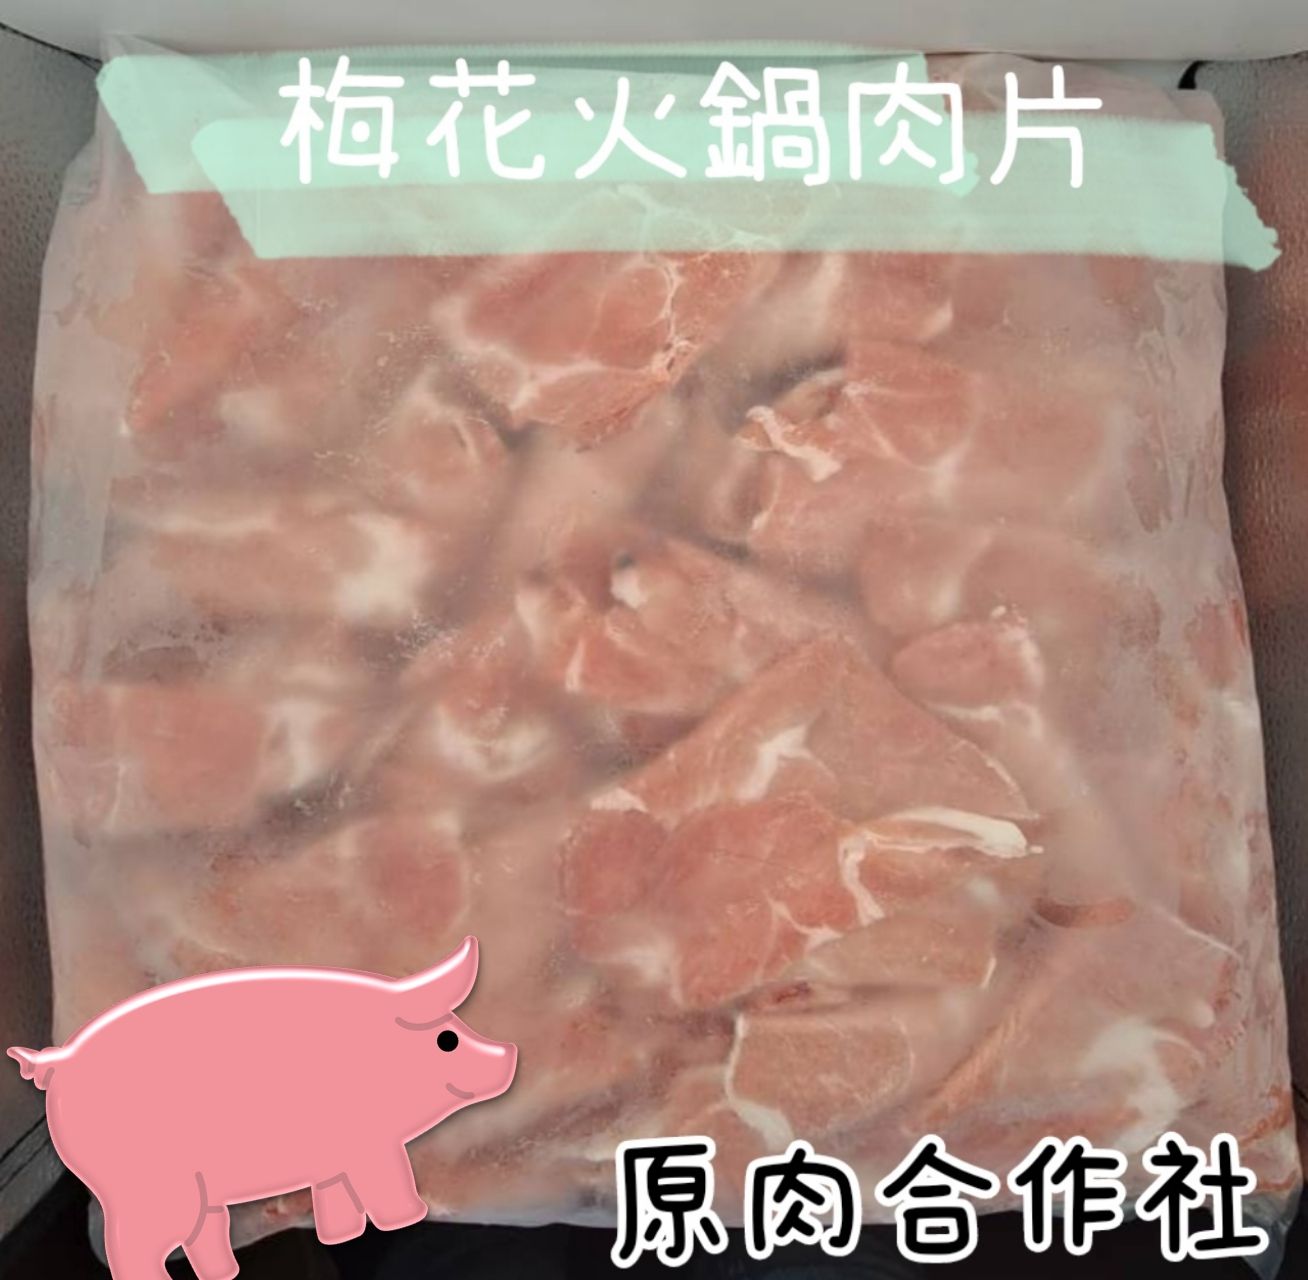 【原肉合作社】大包裝火鍋肉片